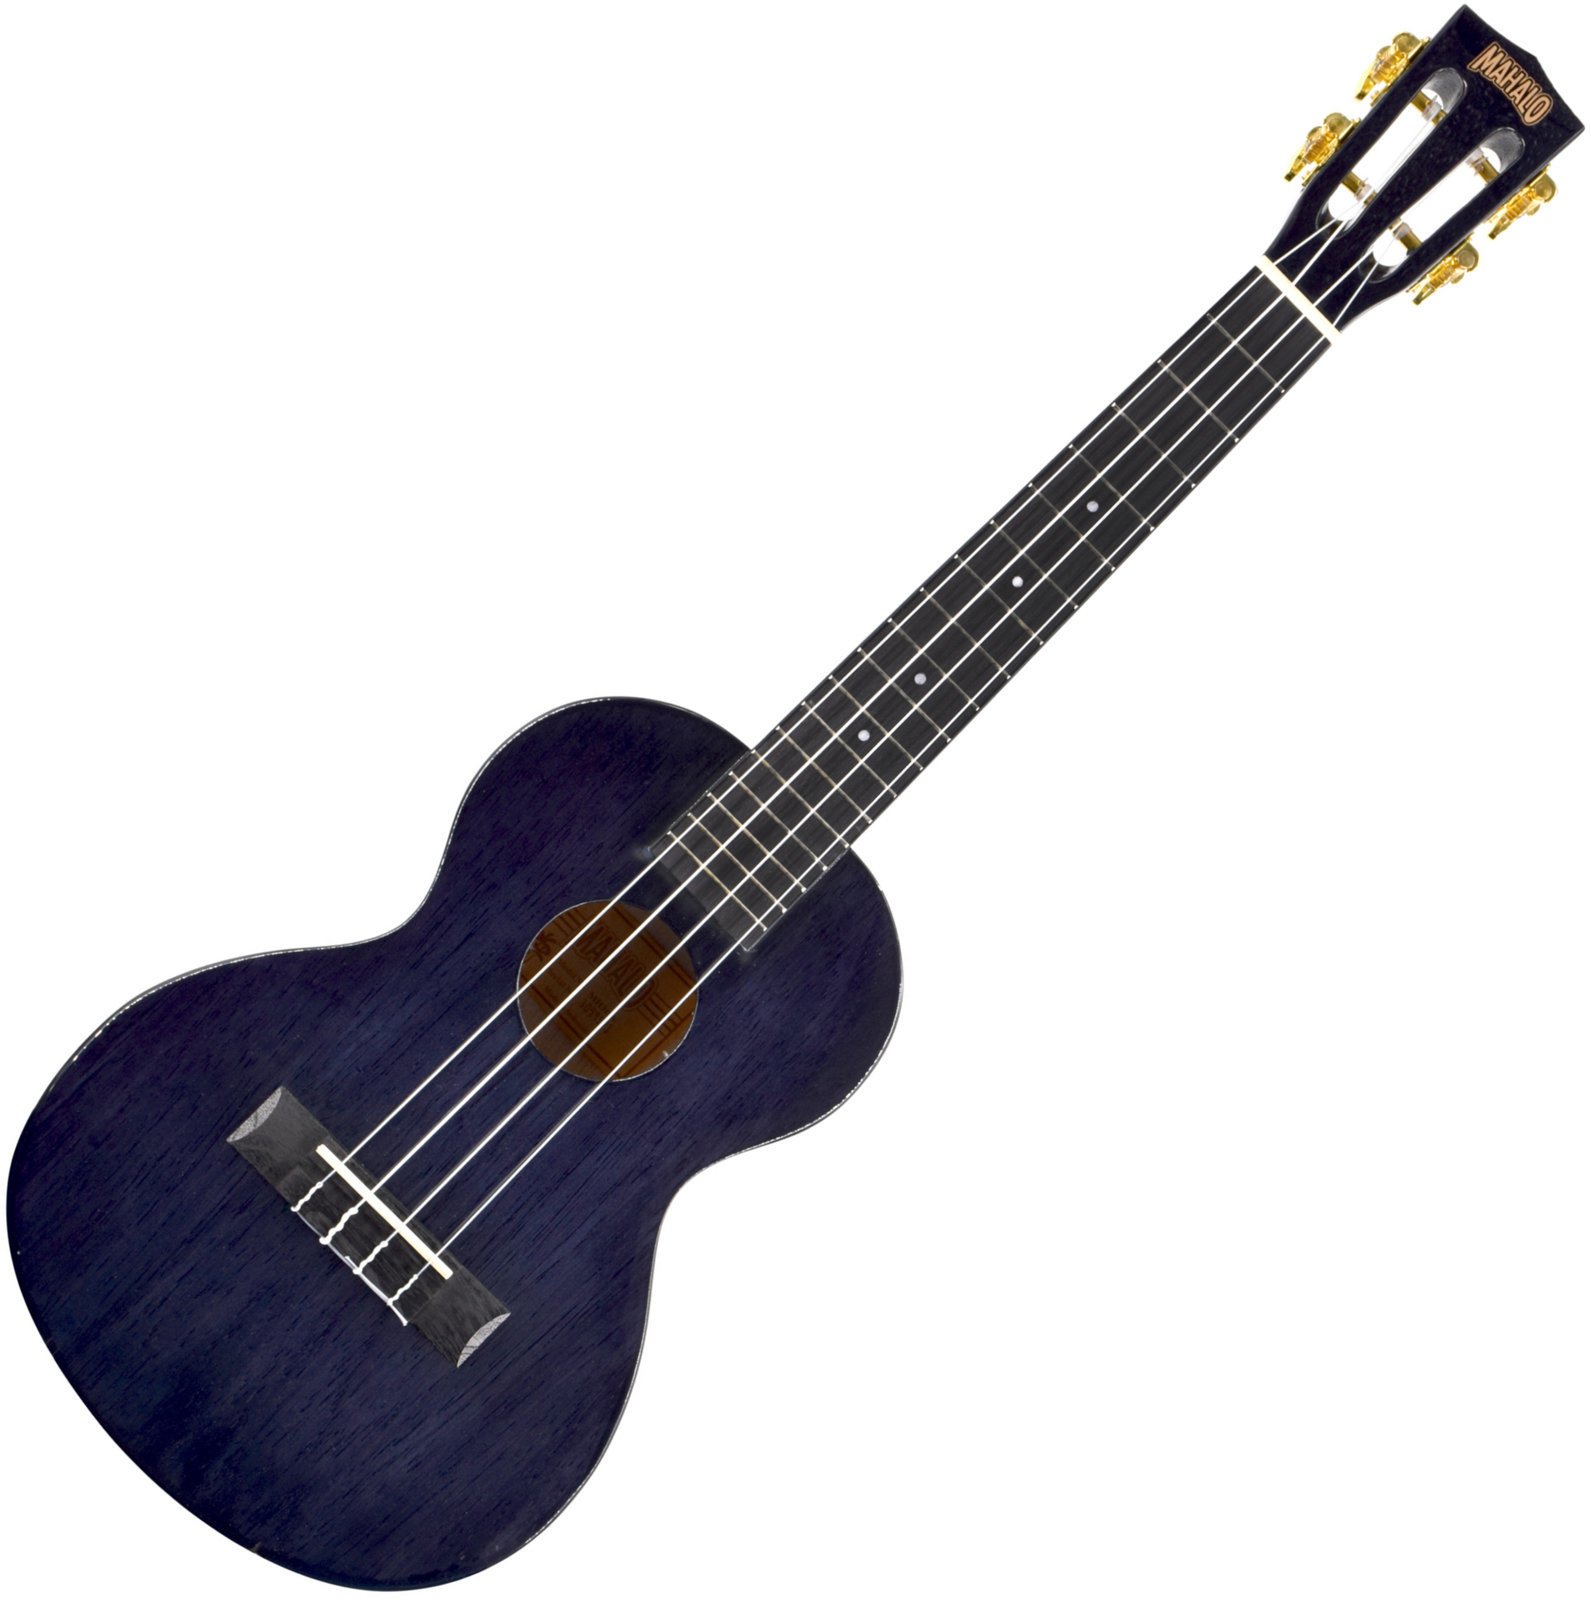 Tenor ukulele Mahalo MH3 Tenor ukulele Transparent Black